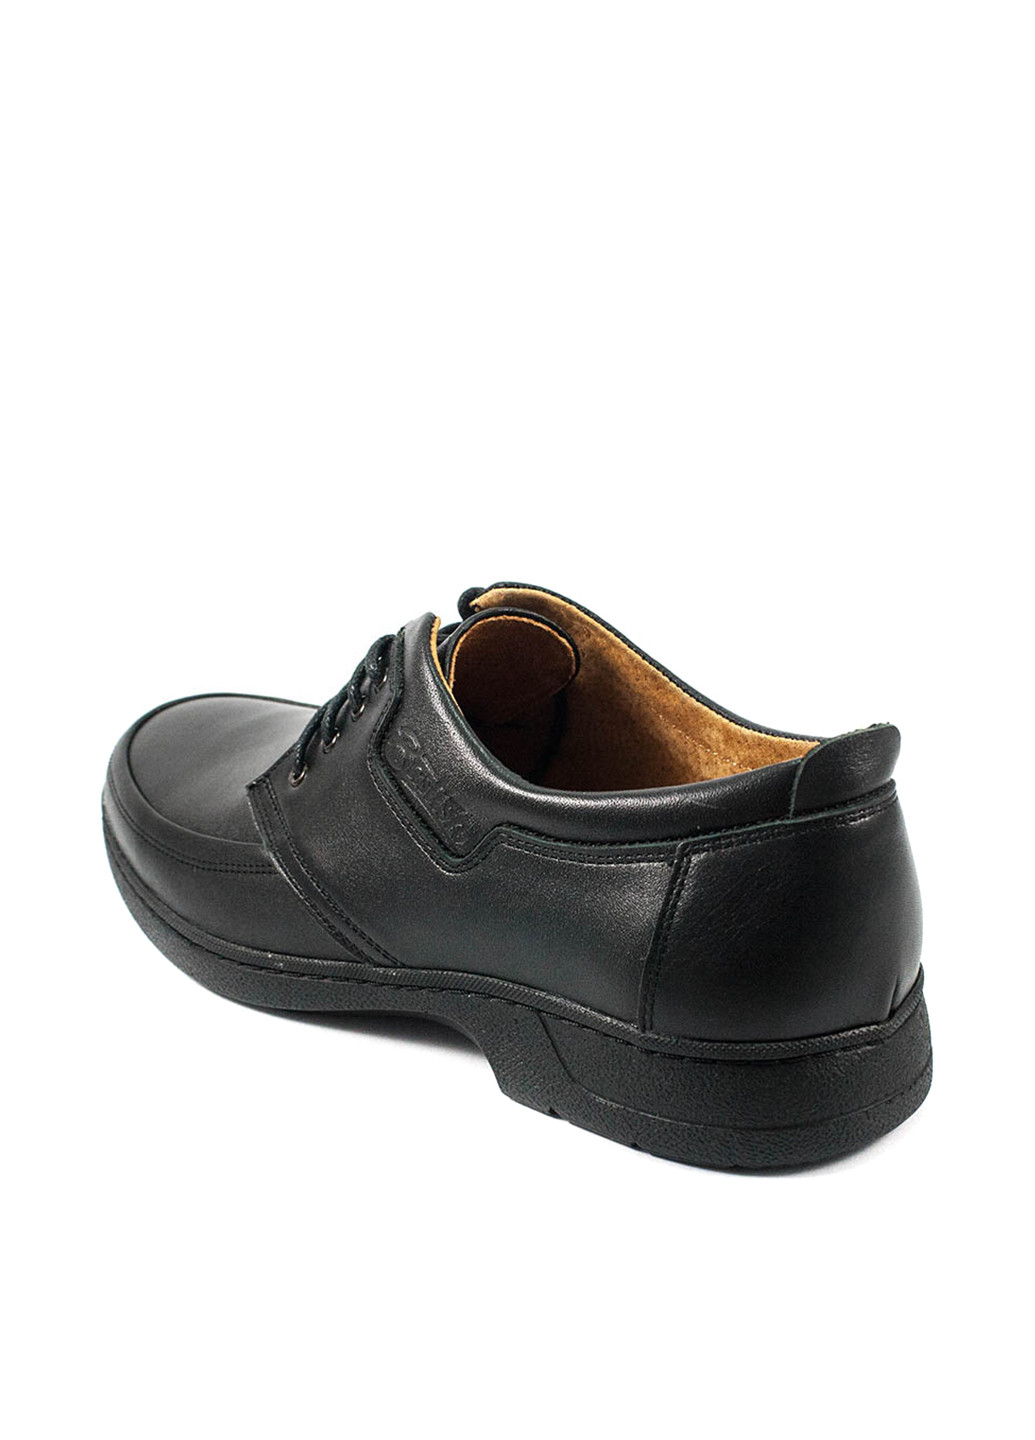 Черные классические туфли Bastion на шнурках